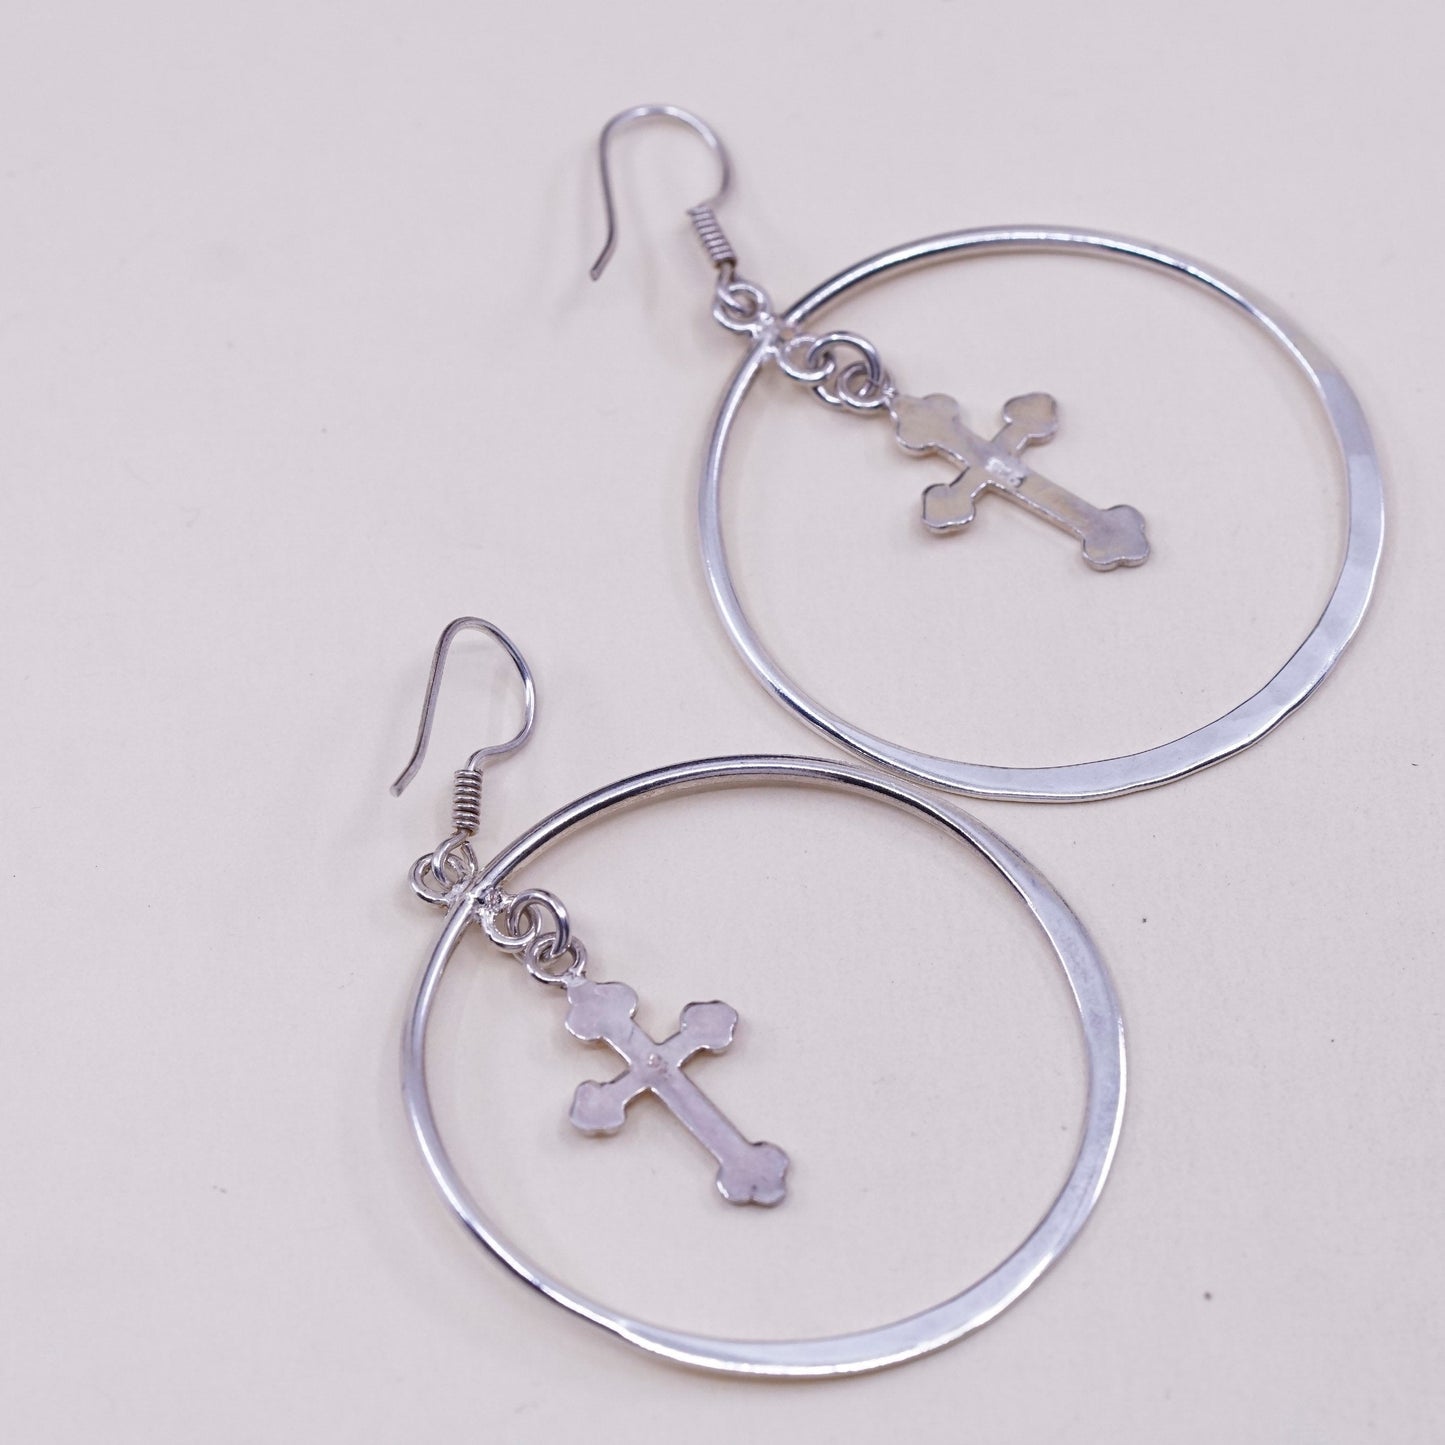 Vintage Sterling silver handmade earrings, huge 925 hoops with cross charms